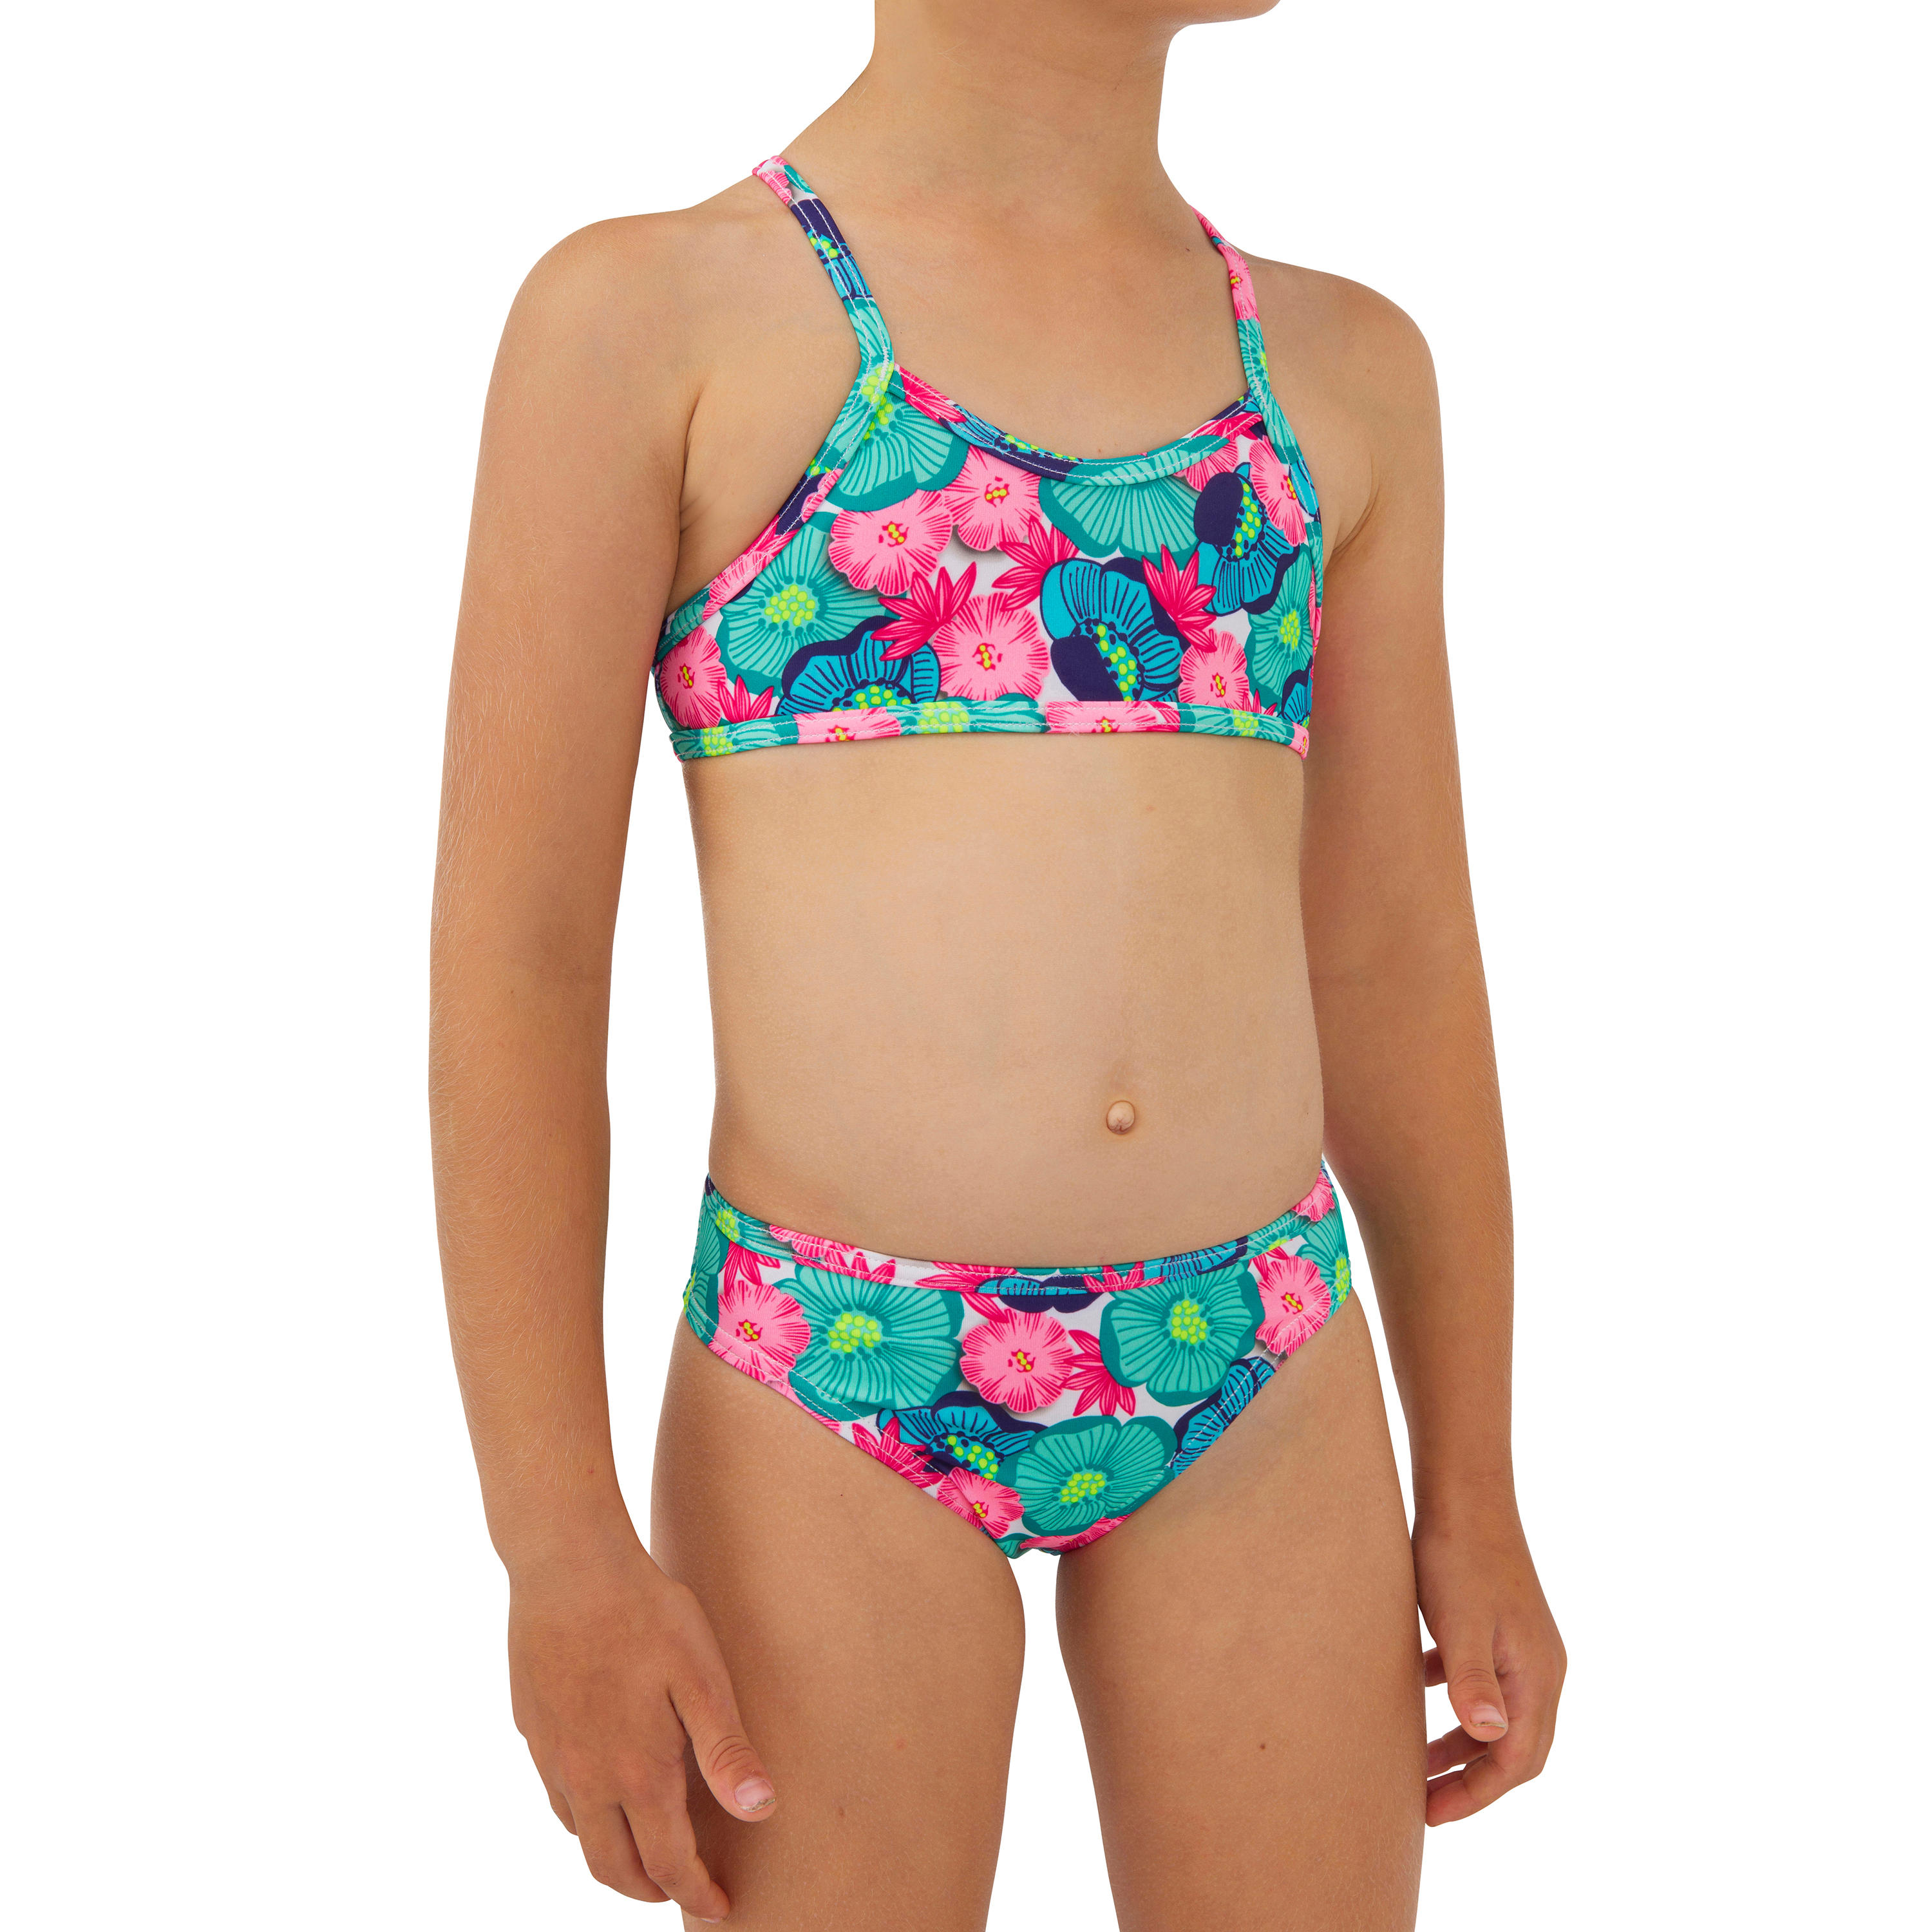 OLAIAN Bikini-Set Mädchen 100 Boni Naka grün/pink 4 Jahre - Gr. 100